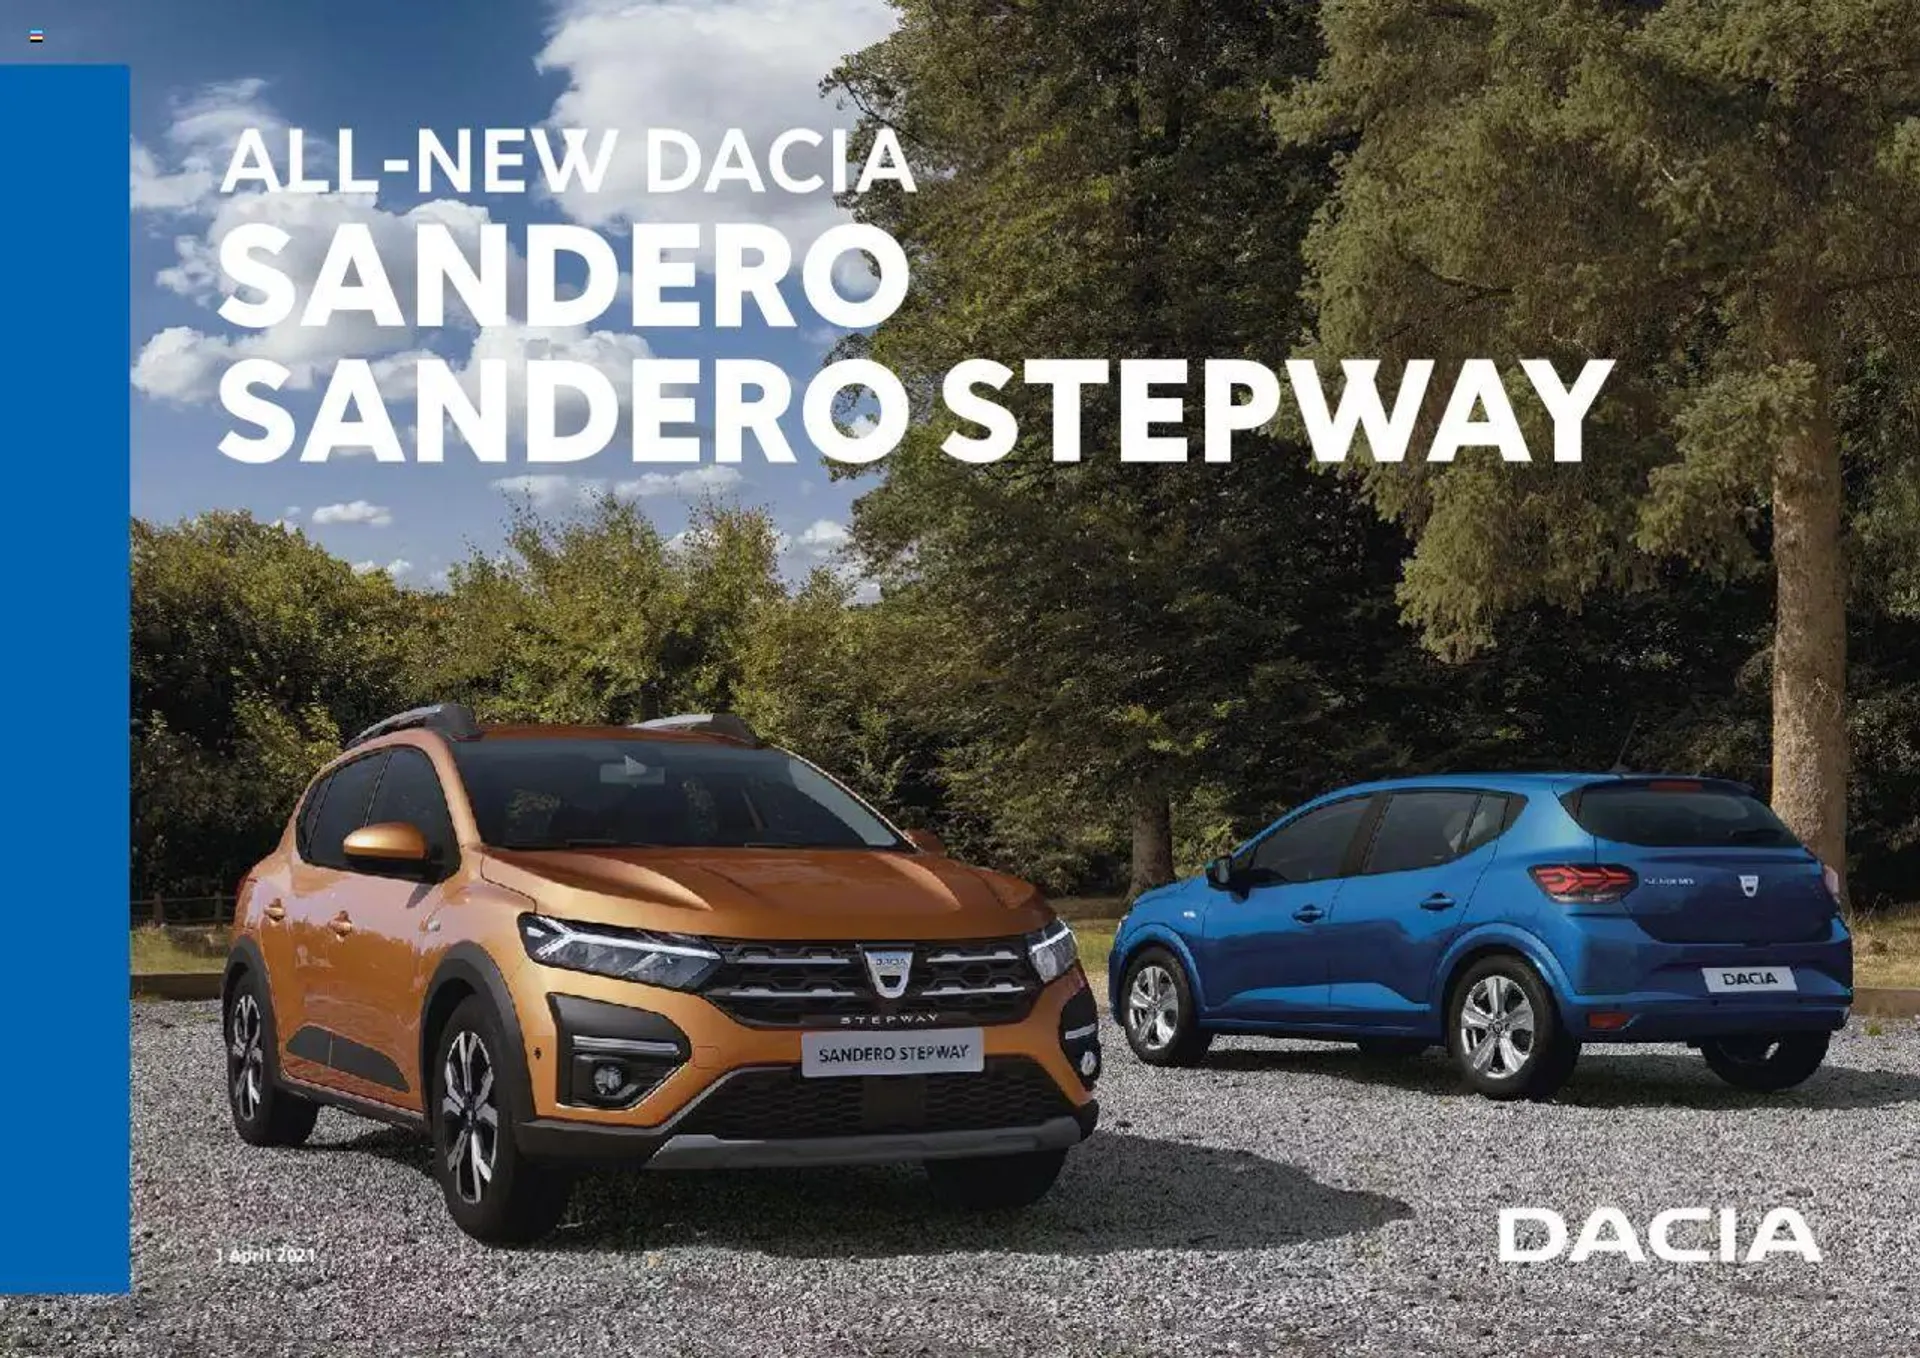 Dacia - All-New Dacia Sandero - 0